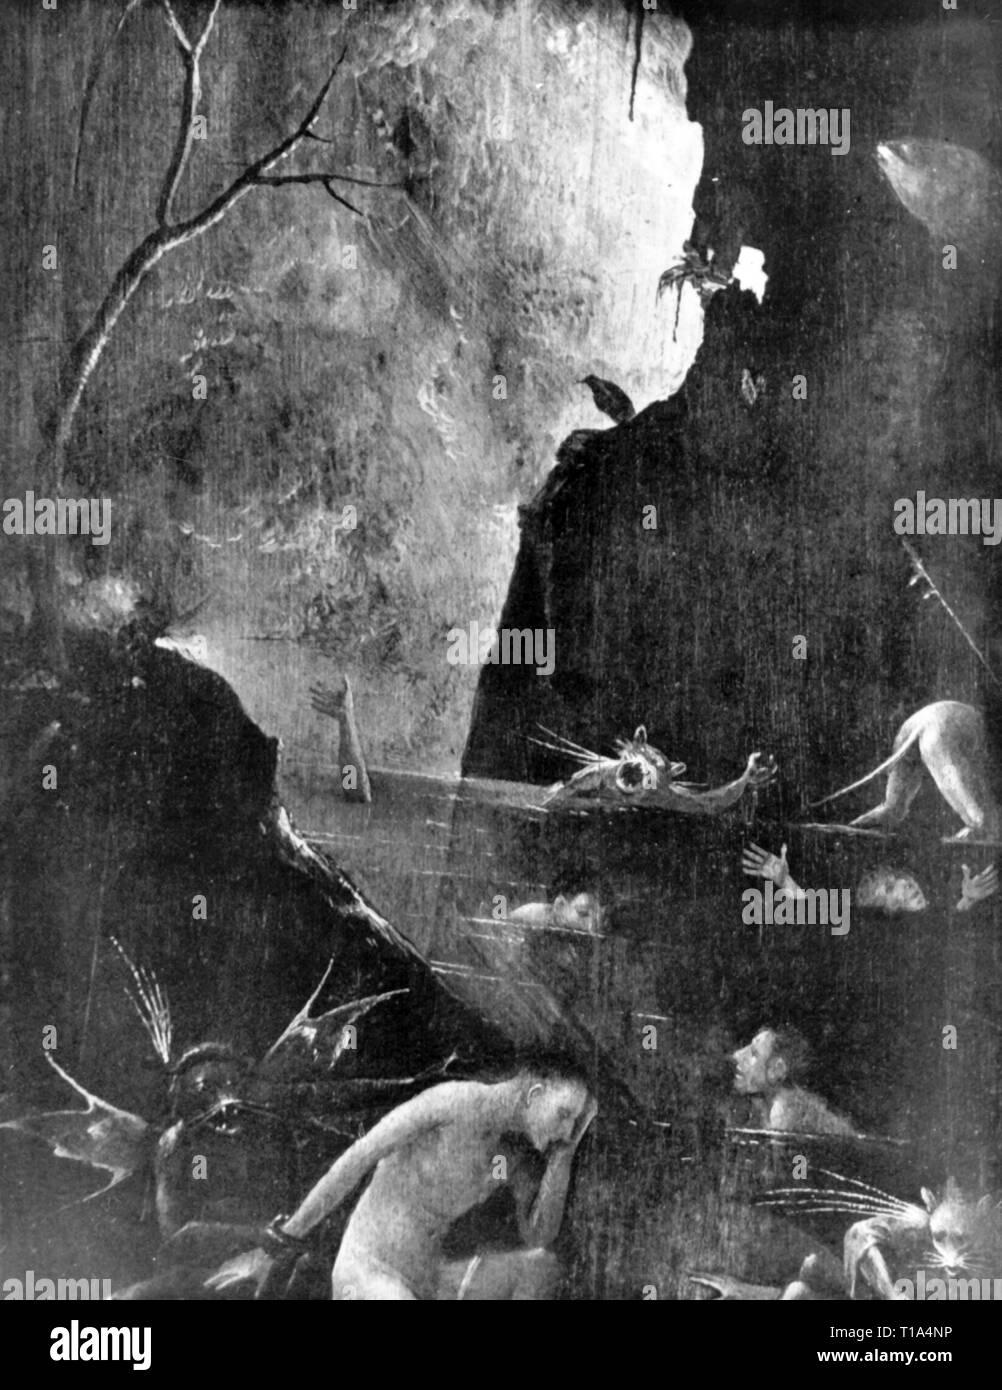 La religion, le christianisme, l'enfer, peinture, de Jérôme Bosch (vers 1450 - 1516), 1505 - 1515, huile sur panneau, détail, du Palais des Doges, Venise, l'artiste n'a pas d'auteur pour être effacé Banque D'Images